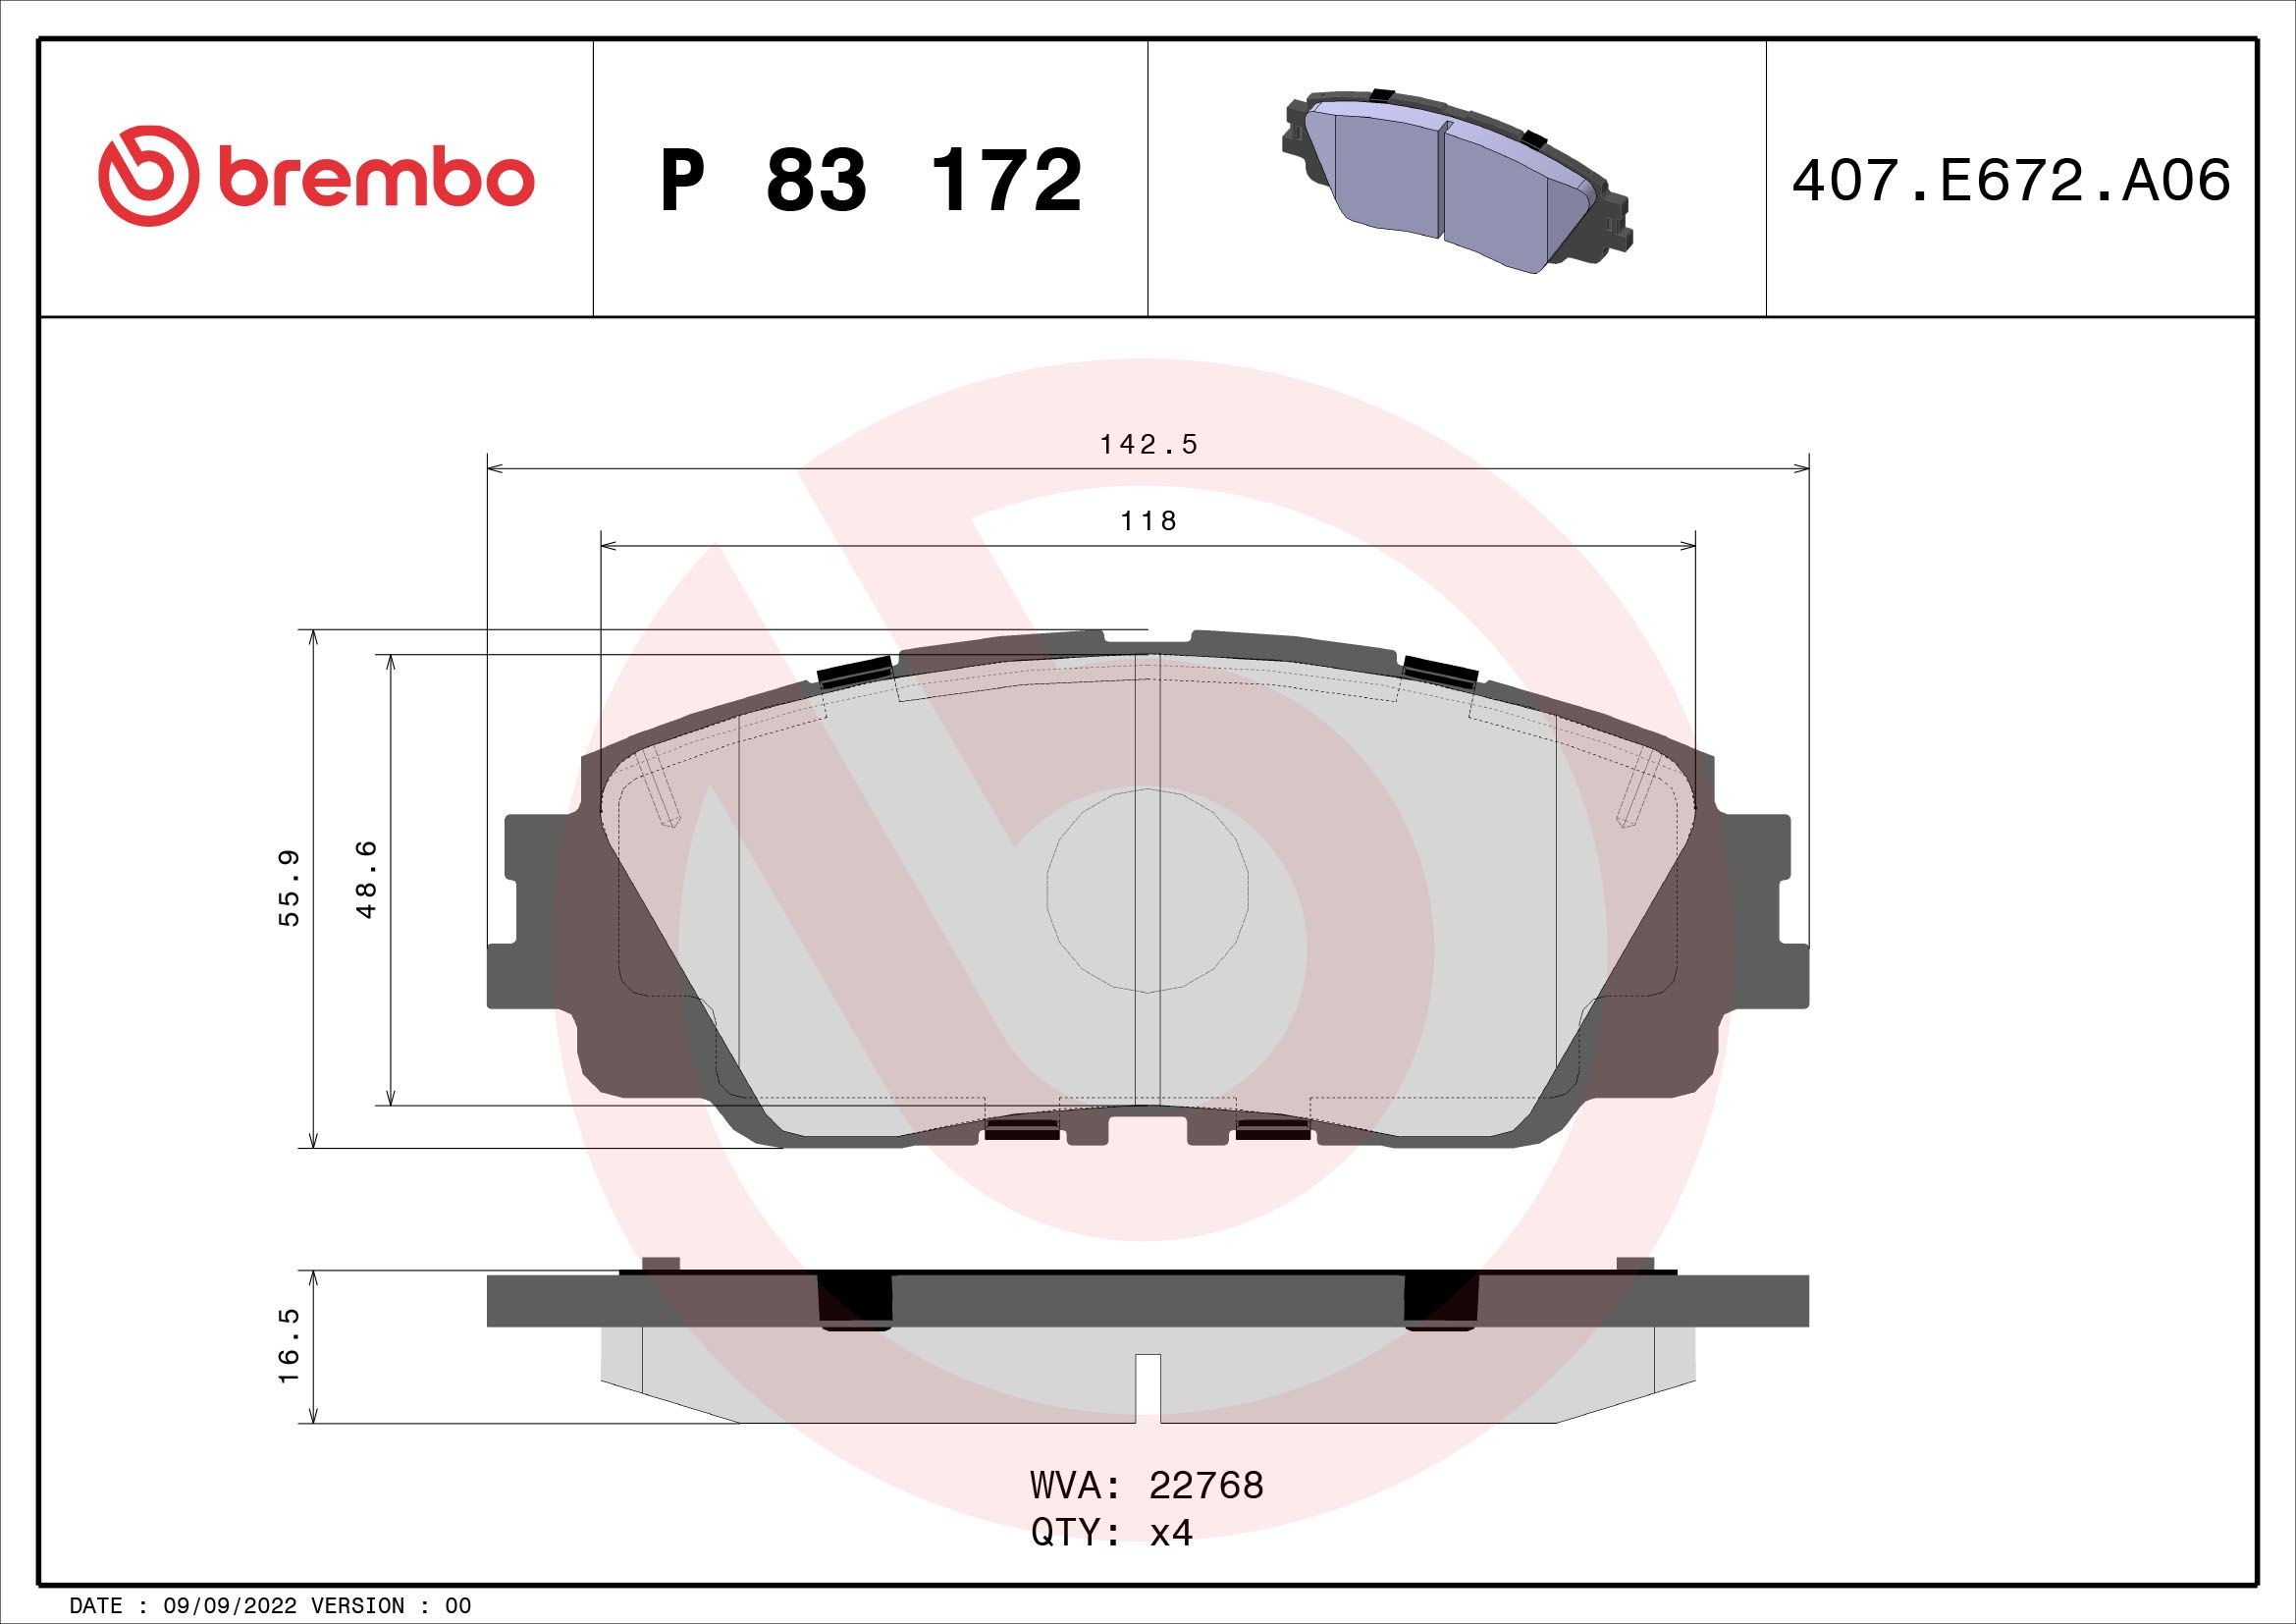 BREMBO P 83 172 Daihatsu ALTIS 2017 spare parts